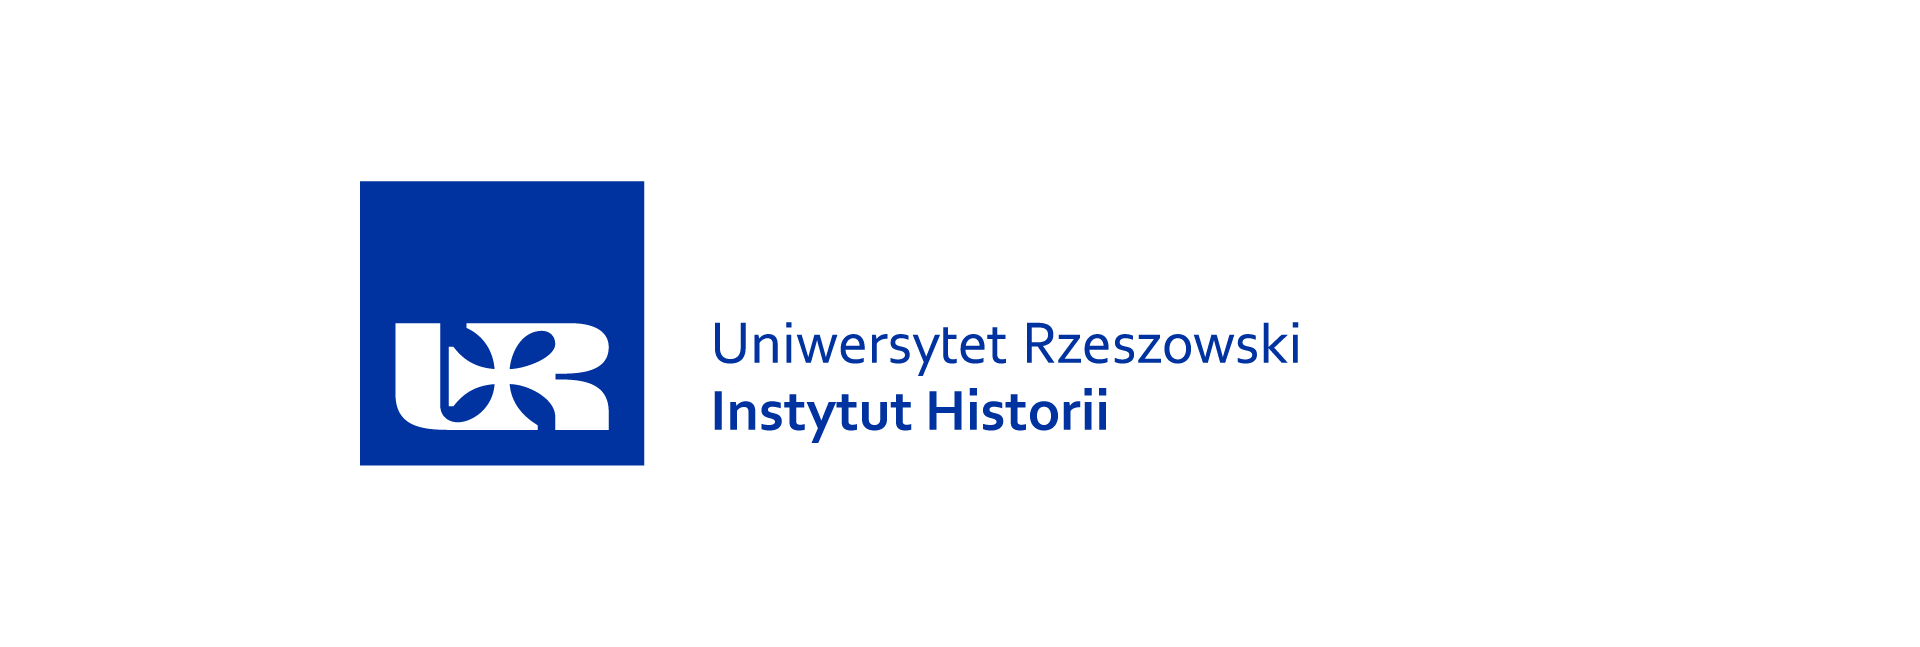 Logo Instytut Historii_ (5).png [18.46 KB]